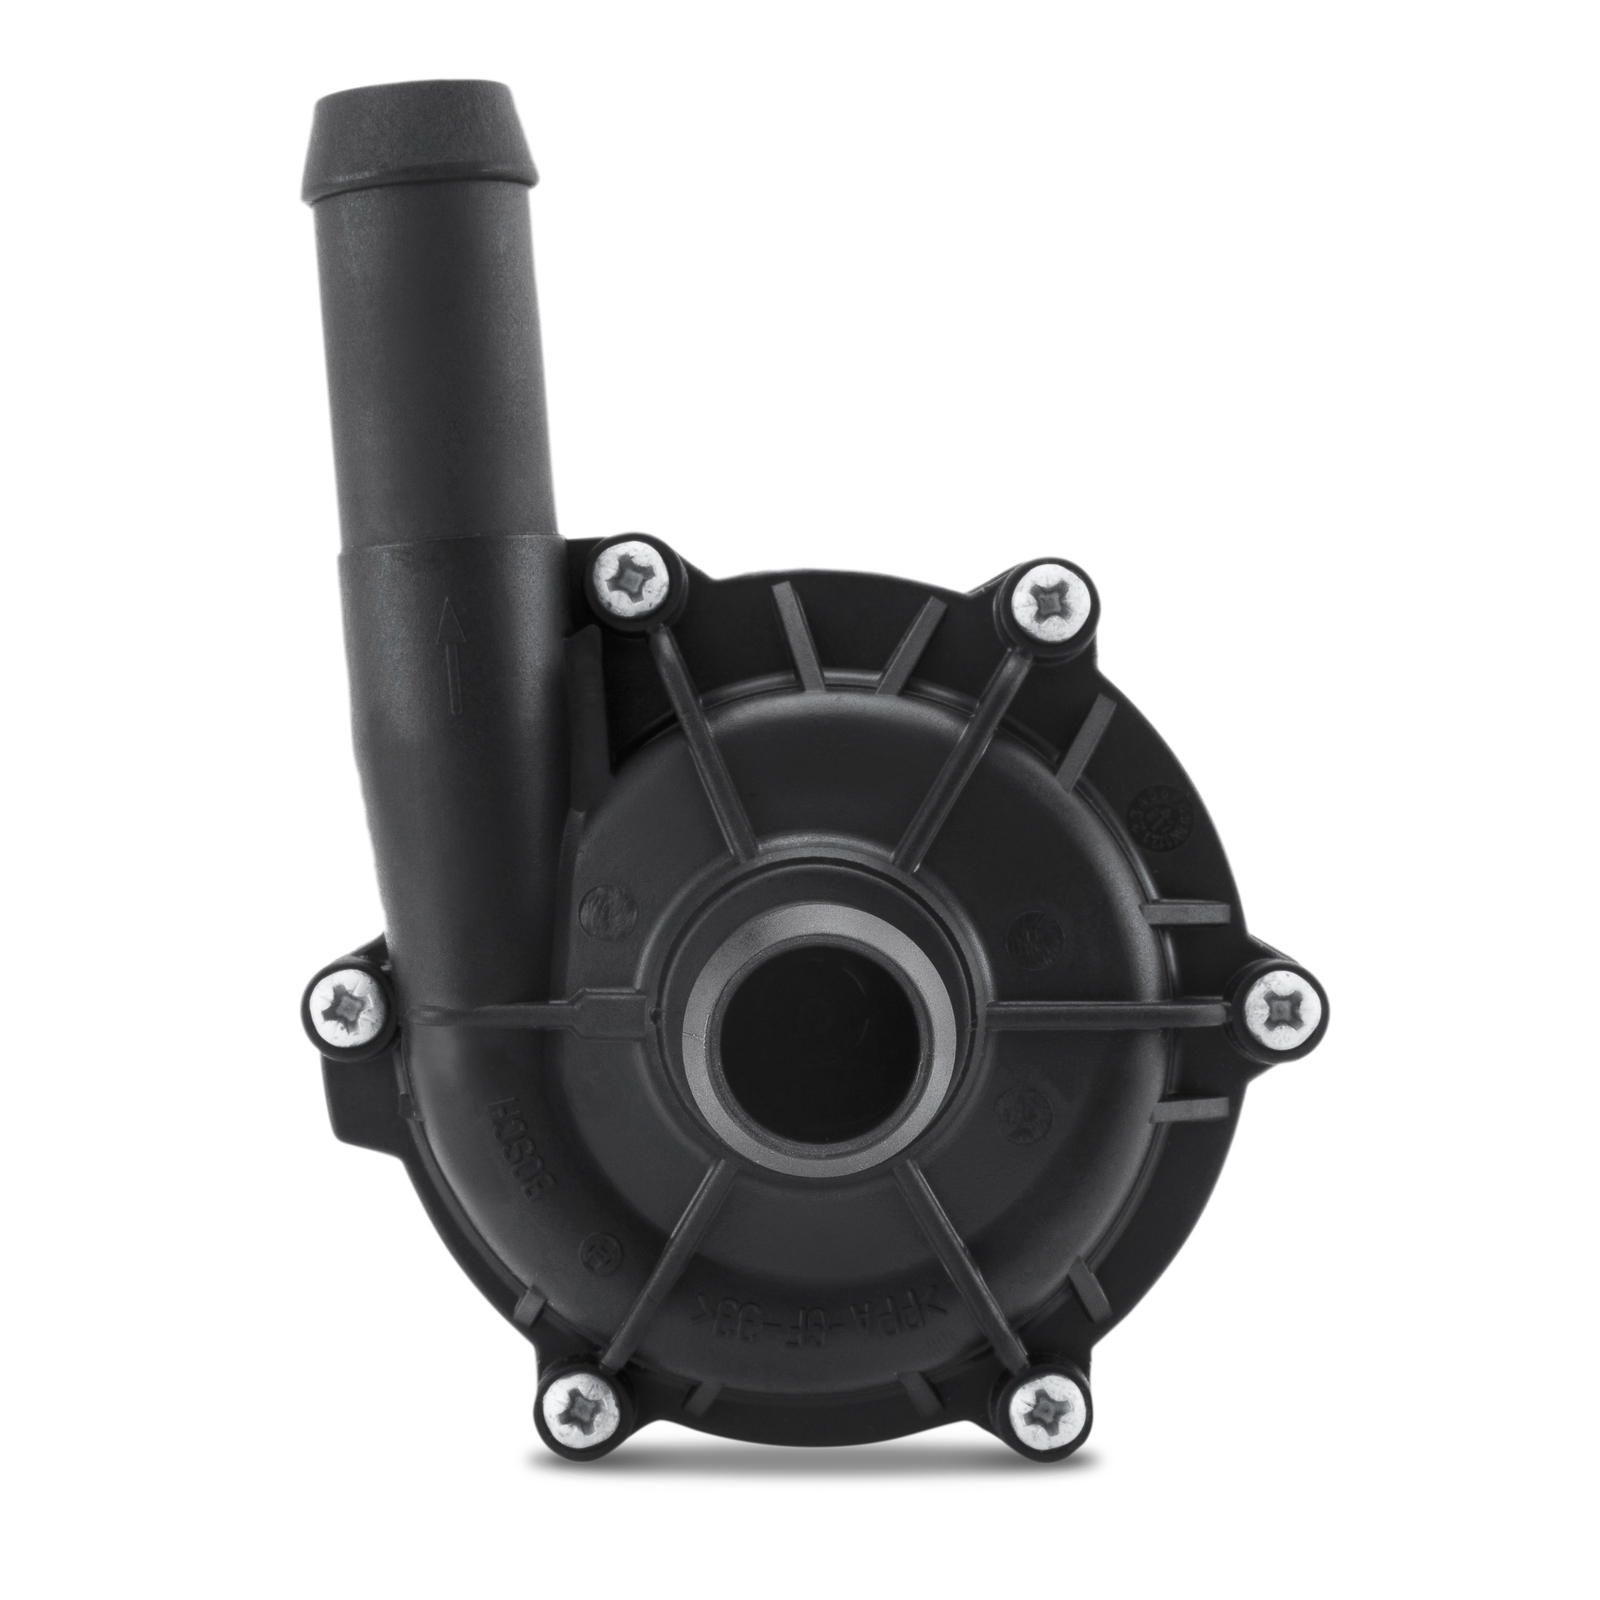 0 392 022 002 Bosch 12V water / intercooler pump, Bosch 002